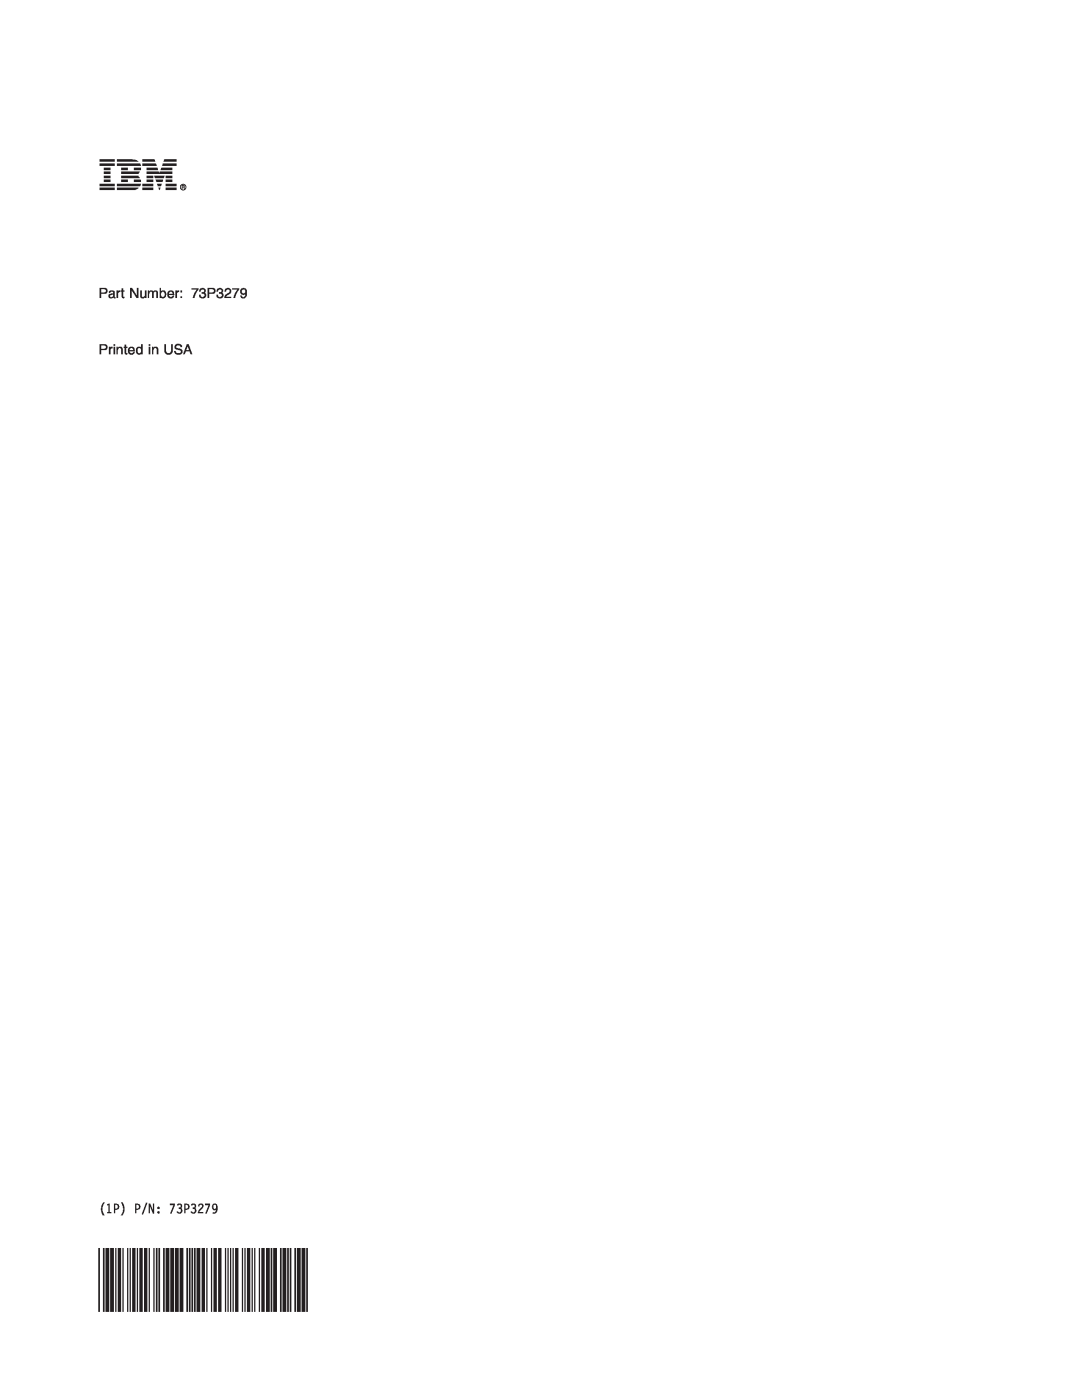 IBM manual Part Number 73P3279 Printed in USA, 1P P/N 73P3279 